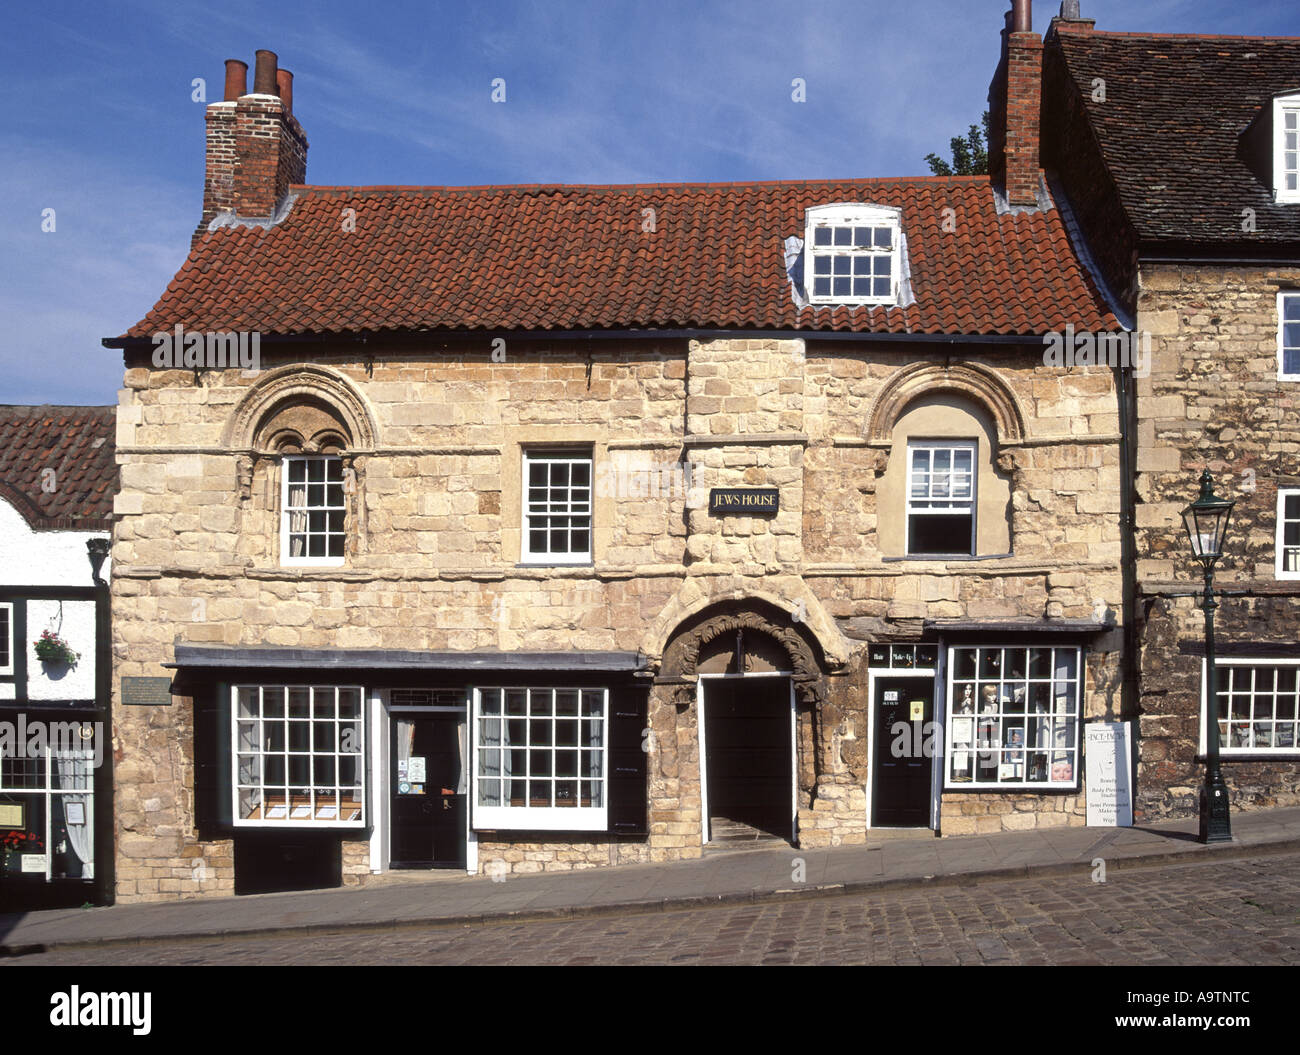 Jew's House facade historique Grade I classé bâtiment l'une des plus anciennes maisons de ville existantes en Angleterre Steep Hill Lincoln Lincolnshire Angleterre Royaume-Uni Banque D'Images